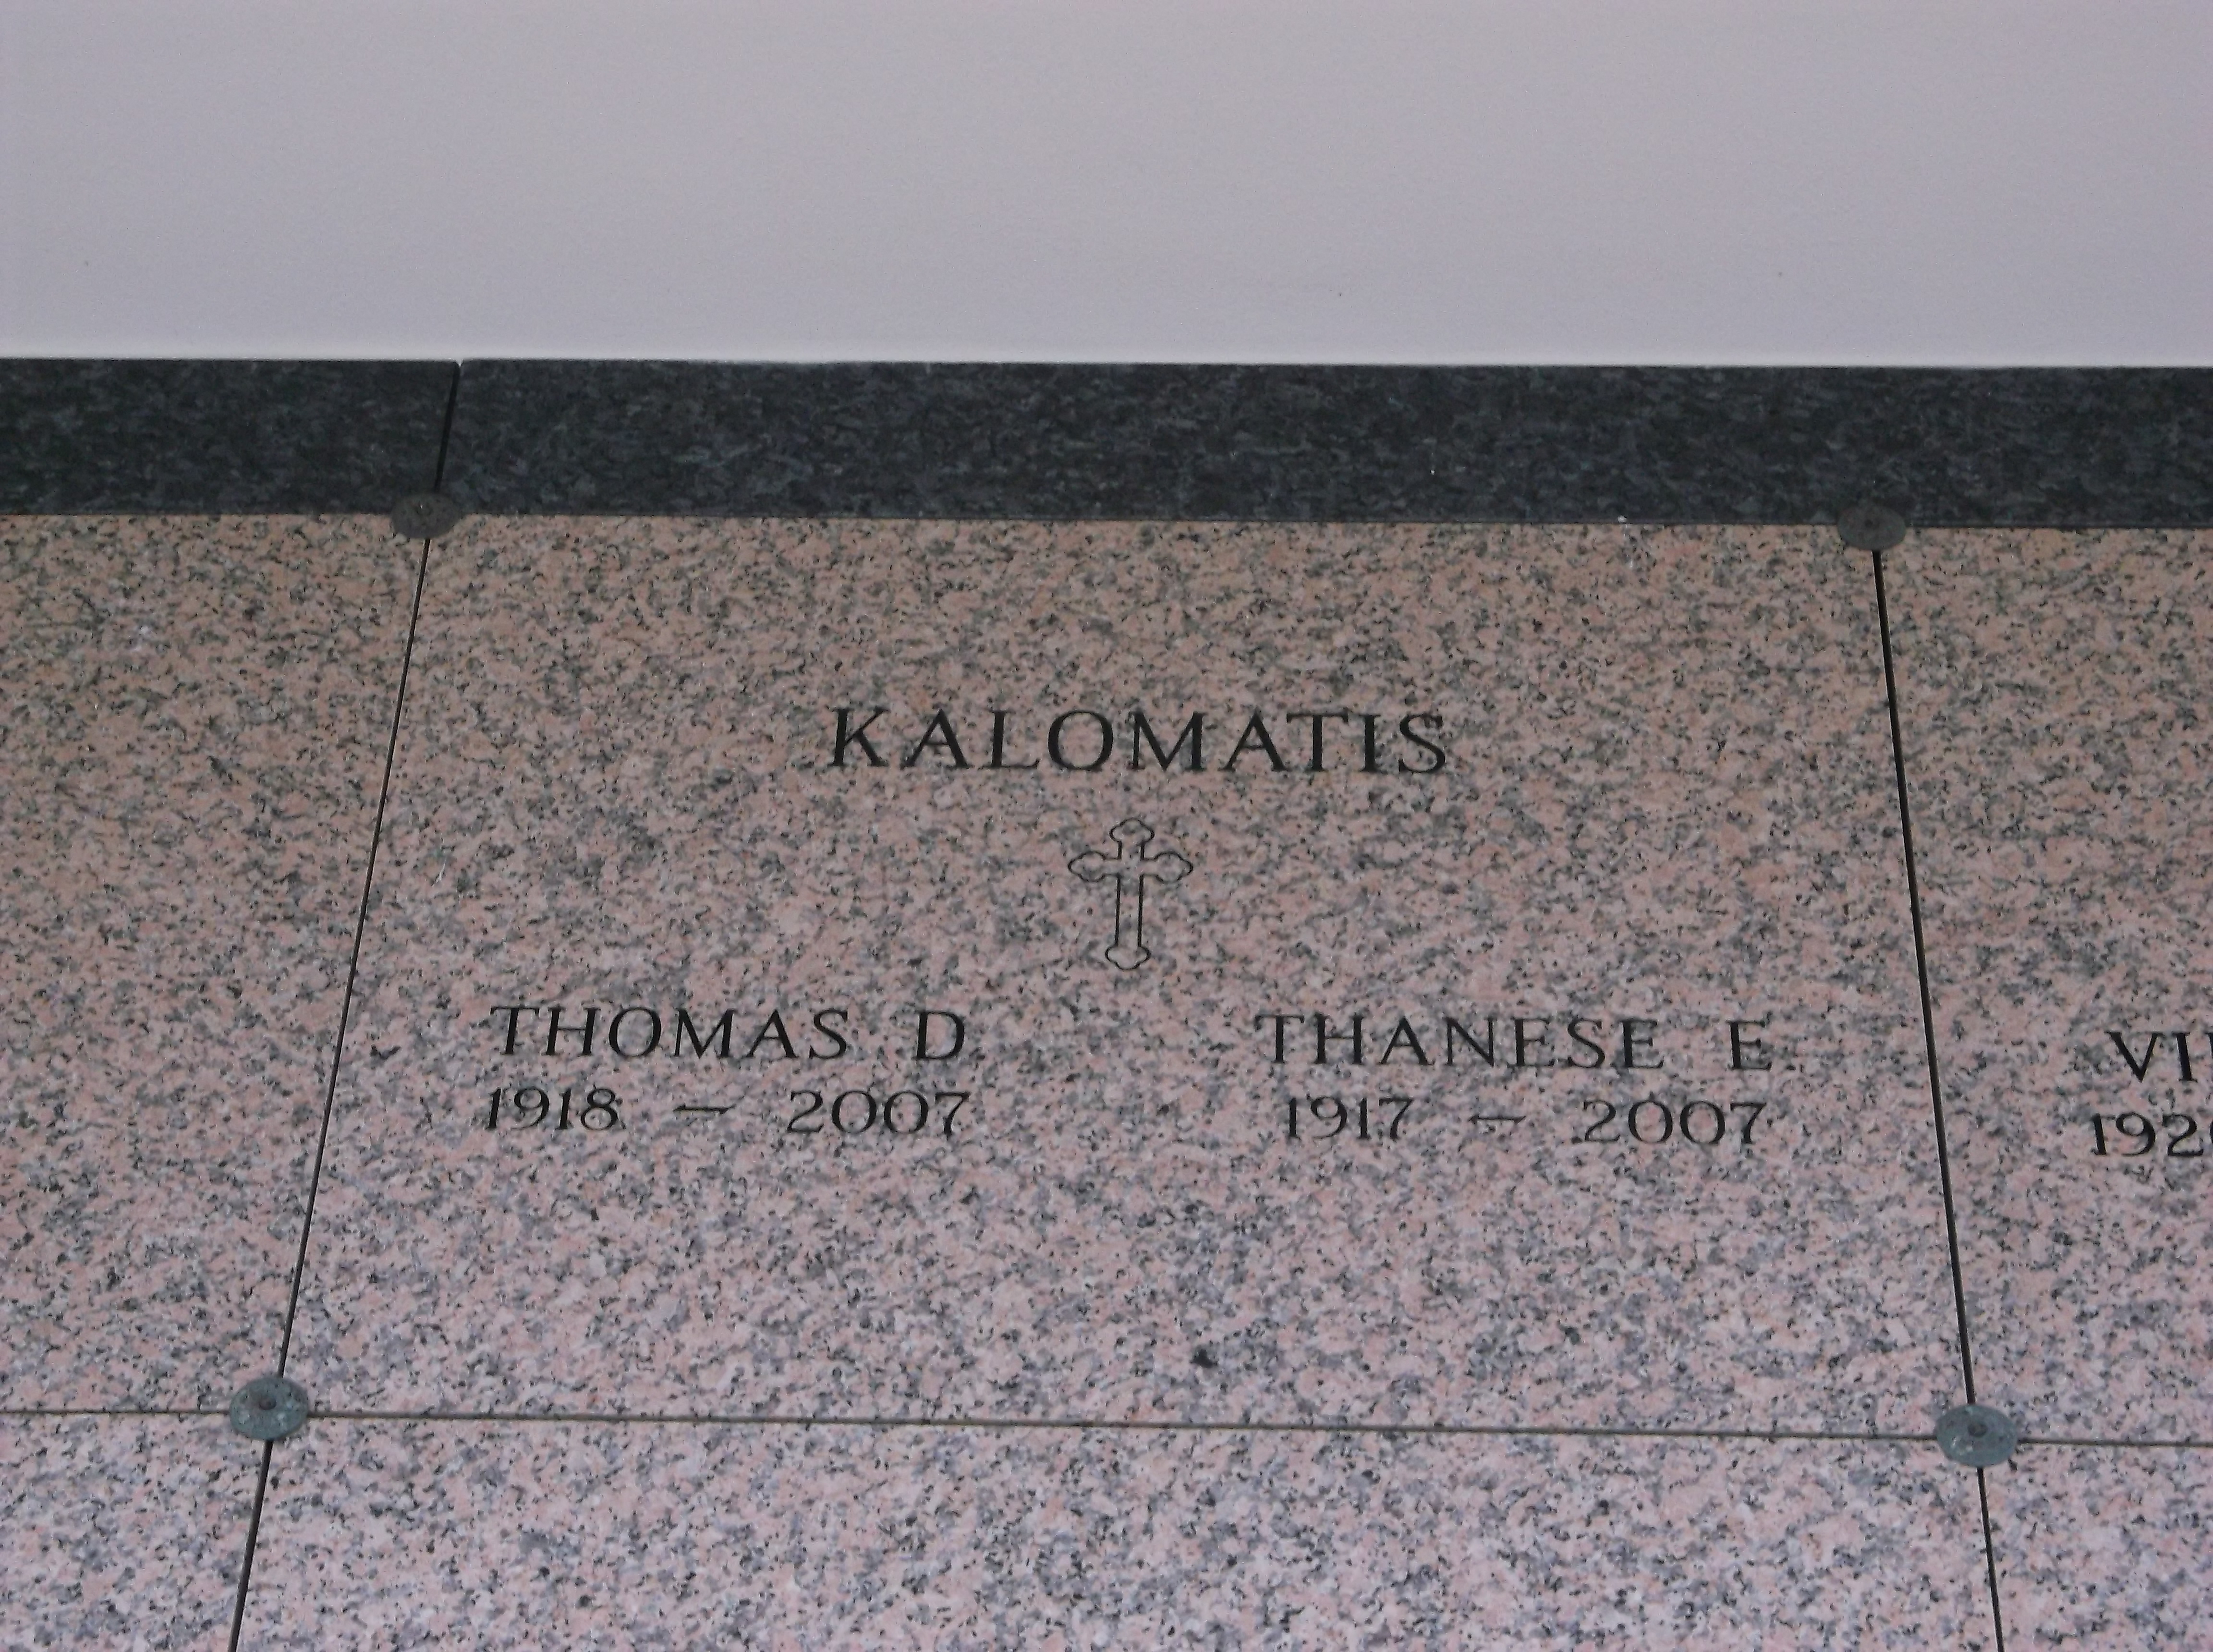 Thomas D Kalomatis